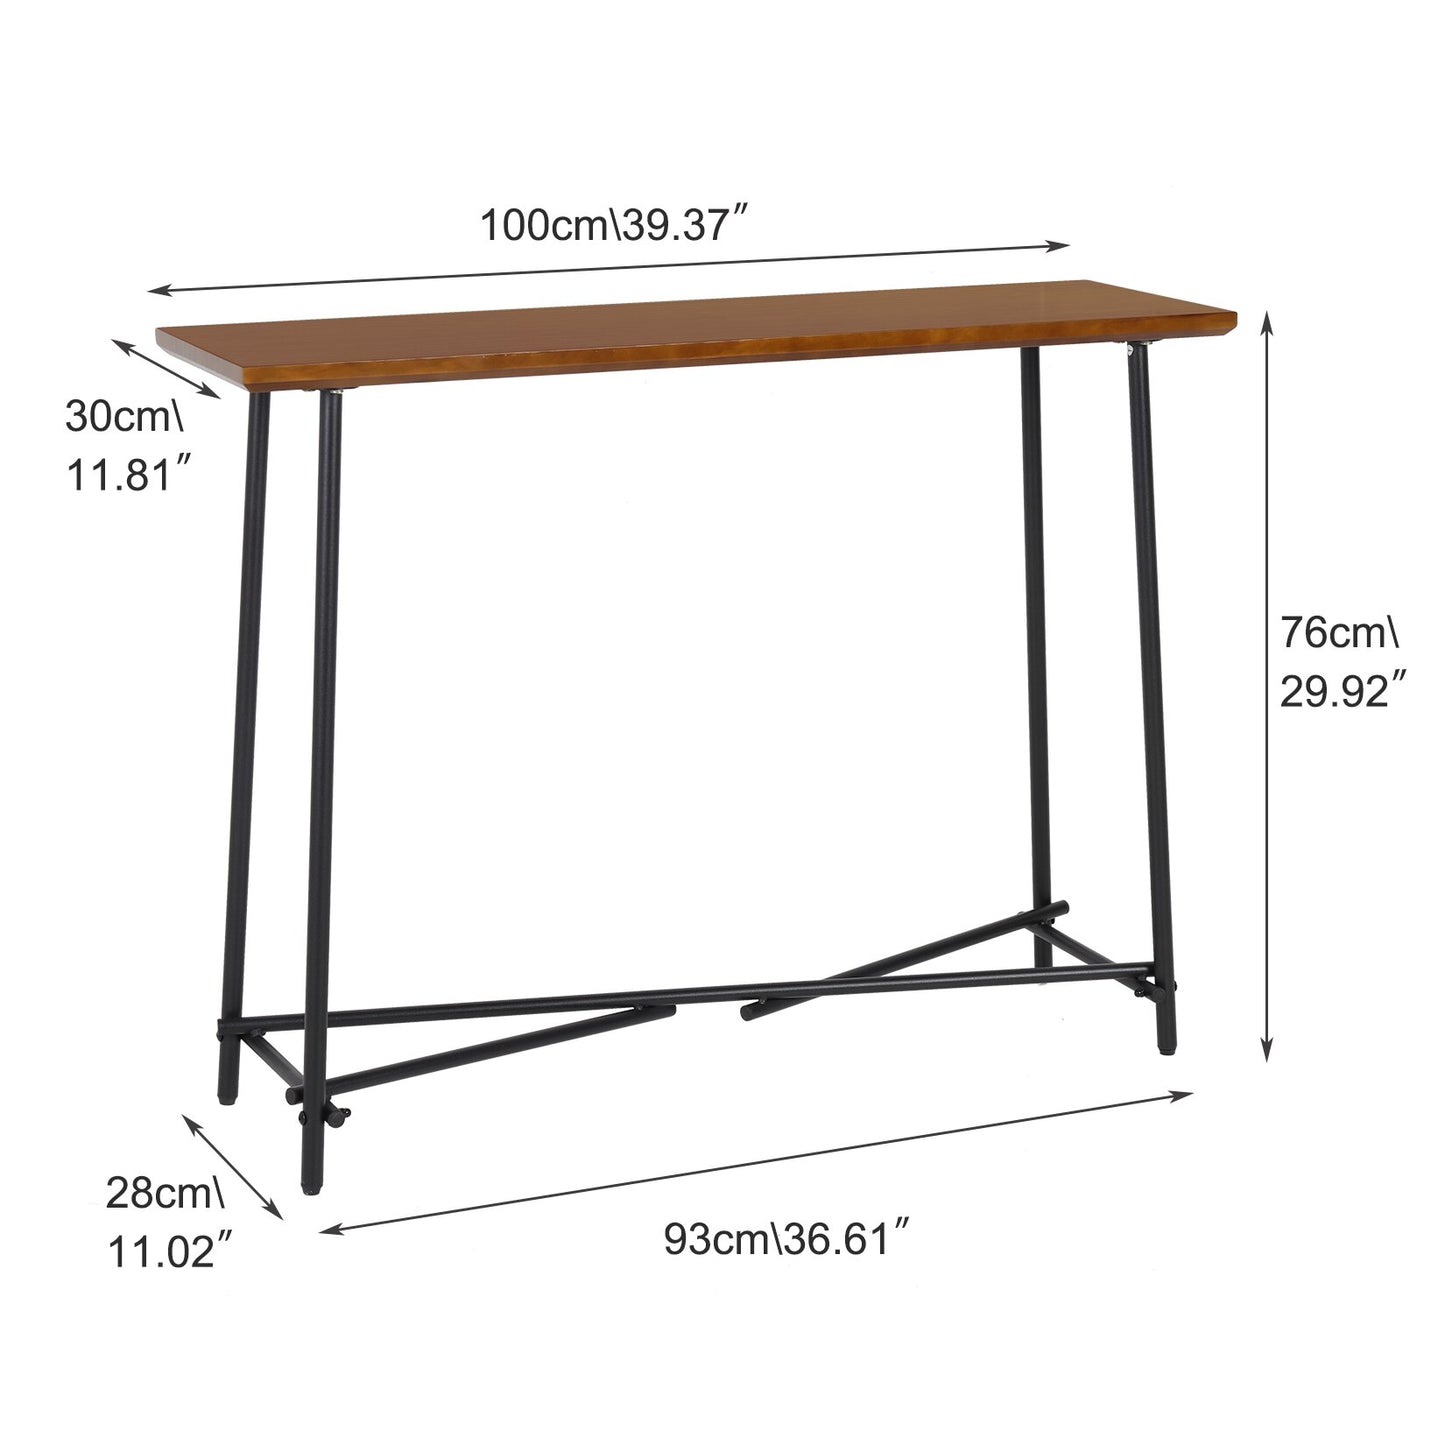 Table console robuste de couleur marron avec rangement - Teinte noyer marron